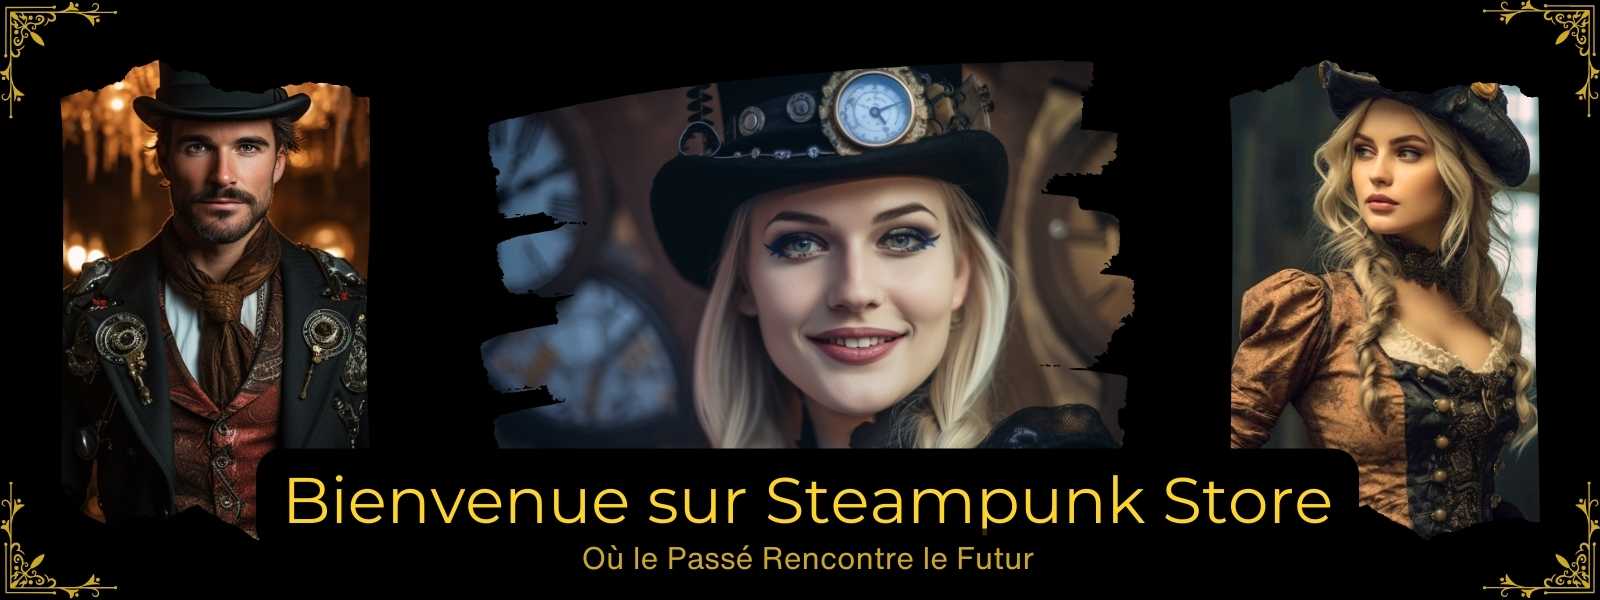 Ensemble De Personnes Steampunk, Hommes Et Femmes Portant Des